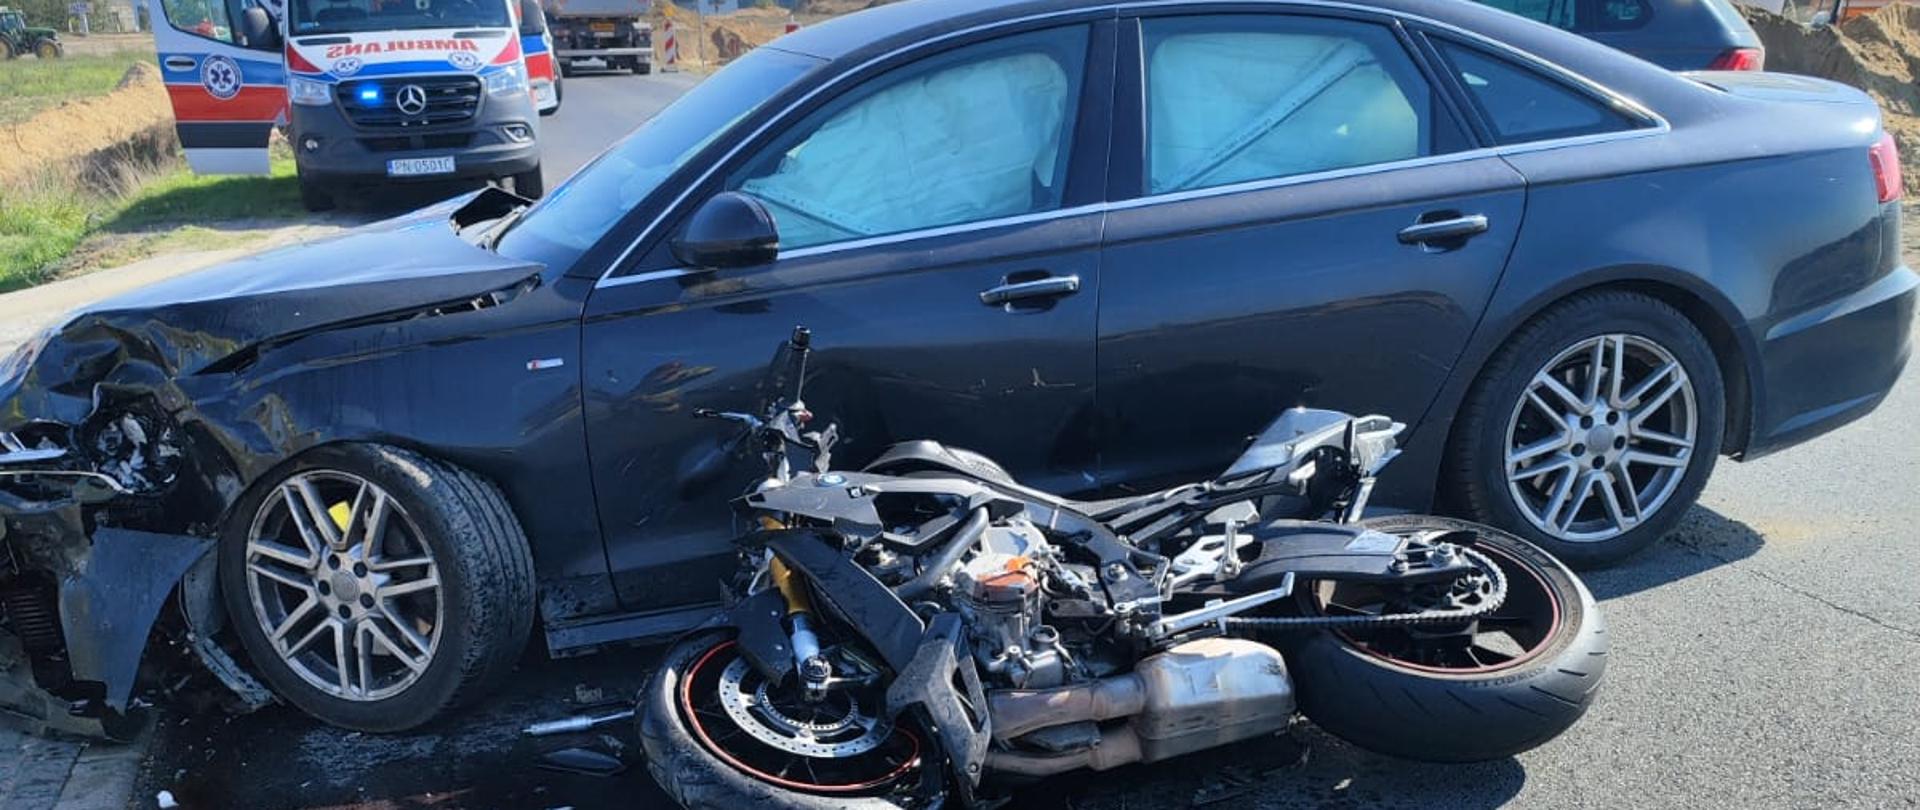 Zdjęcie przedstawia wypadek z udziałem samochodu osobowego z motocyklem. Motocykl leży przed autem. Samochód ma uszkodzony przód. Widać plamę płynów eksploatacyjnych. Z tyłu widać karetkę pogotowia. 